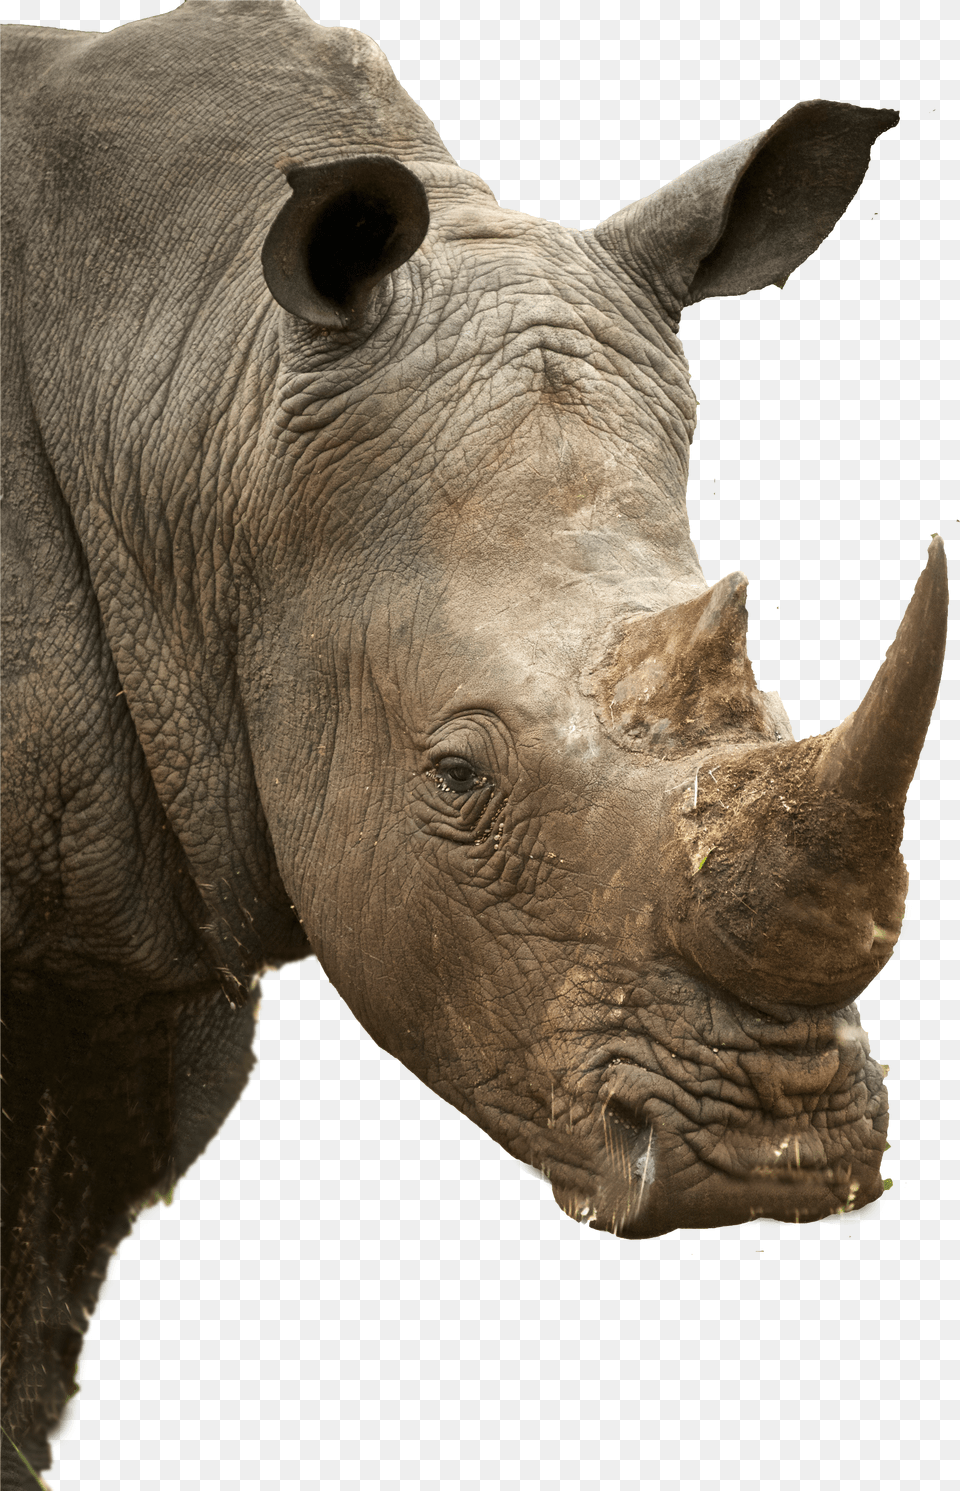 Rhino Profile Png Image